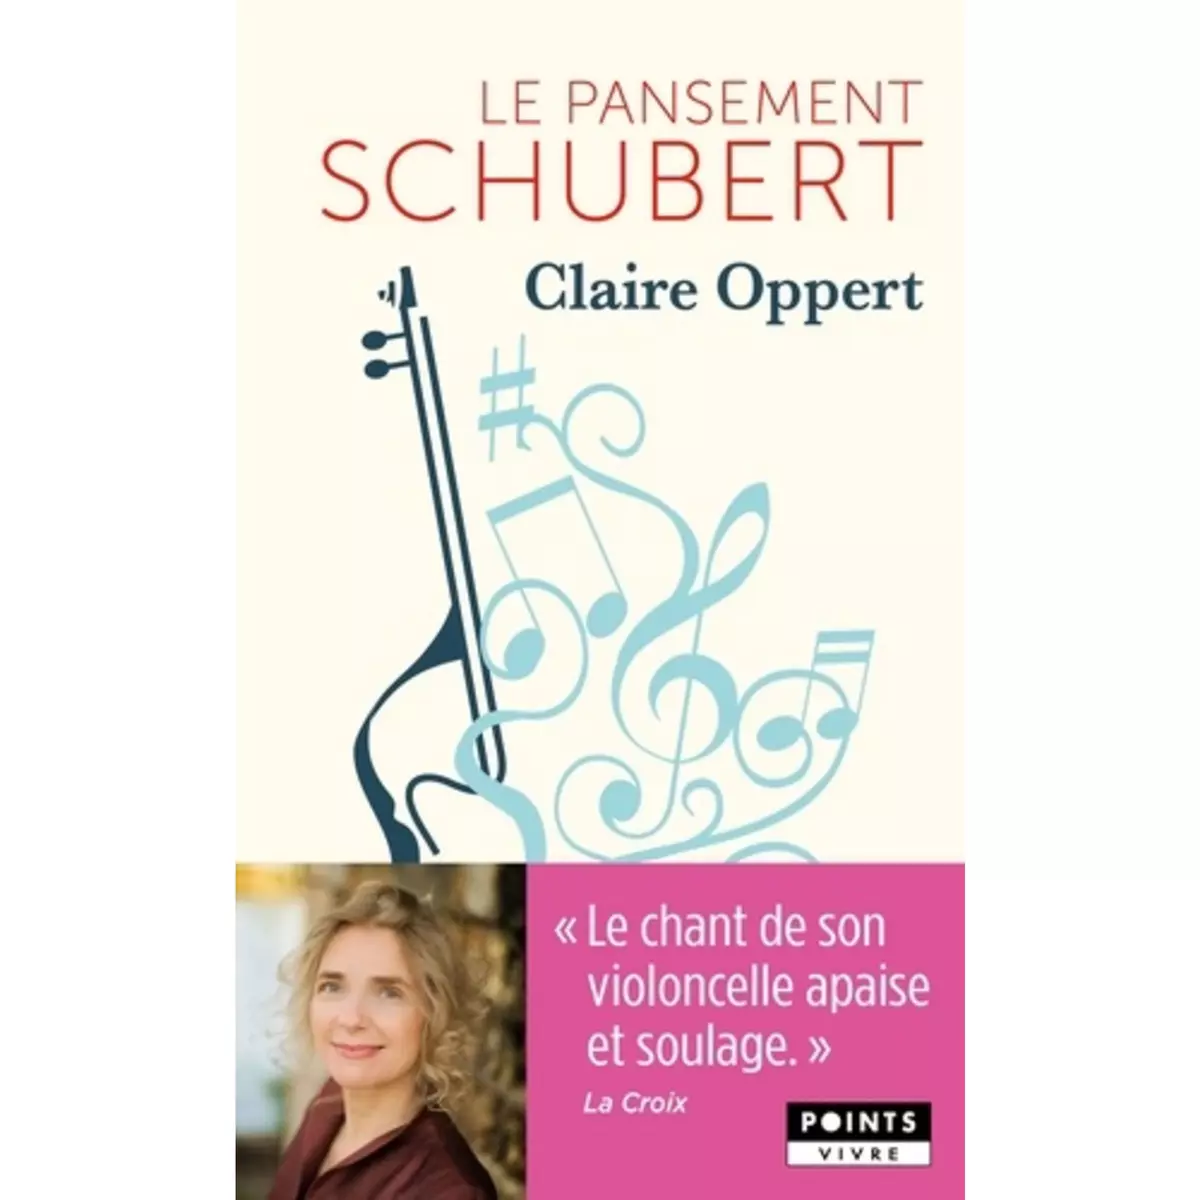  LE PANSEMENT SCHUBERT, Oppert Claire